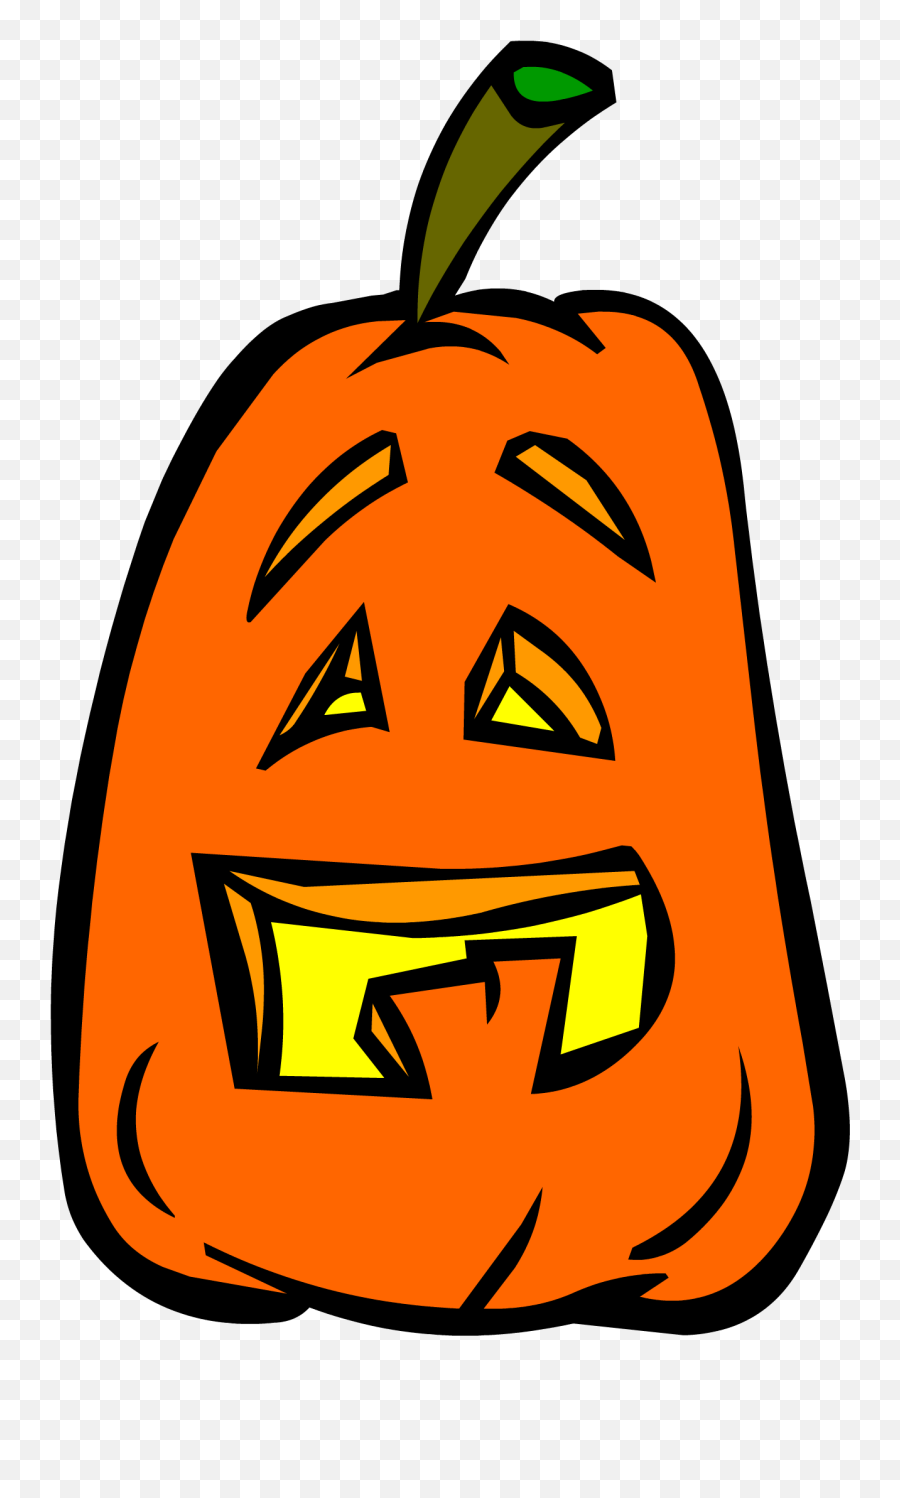 Goofy Jack O Lantern - Goofy Jack O Lanterns Clipart Full Goofy Jack O Lantern Emoji,Jack O Lantern Emoticon